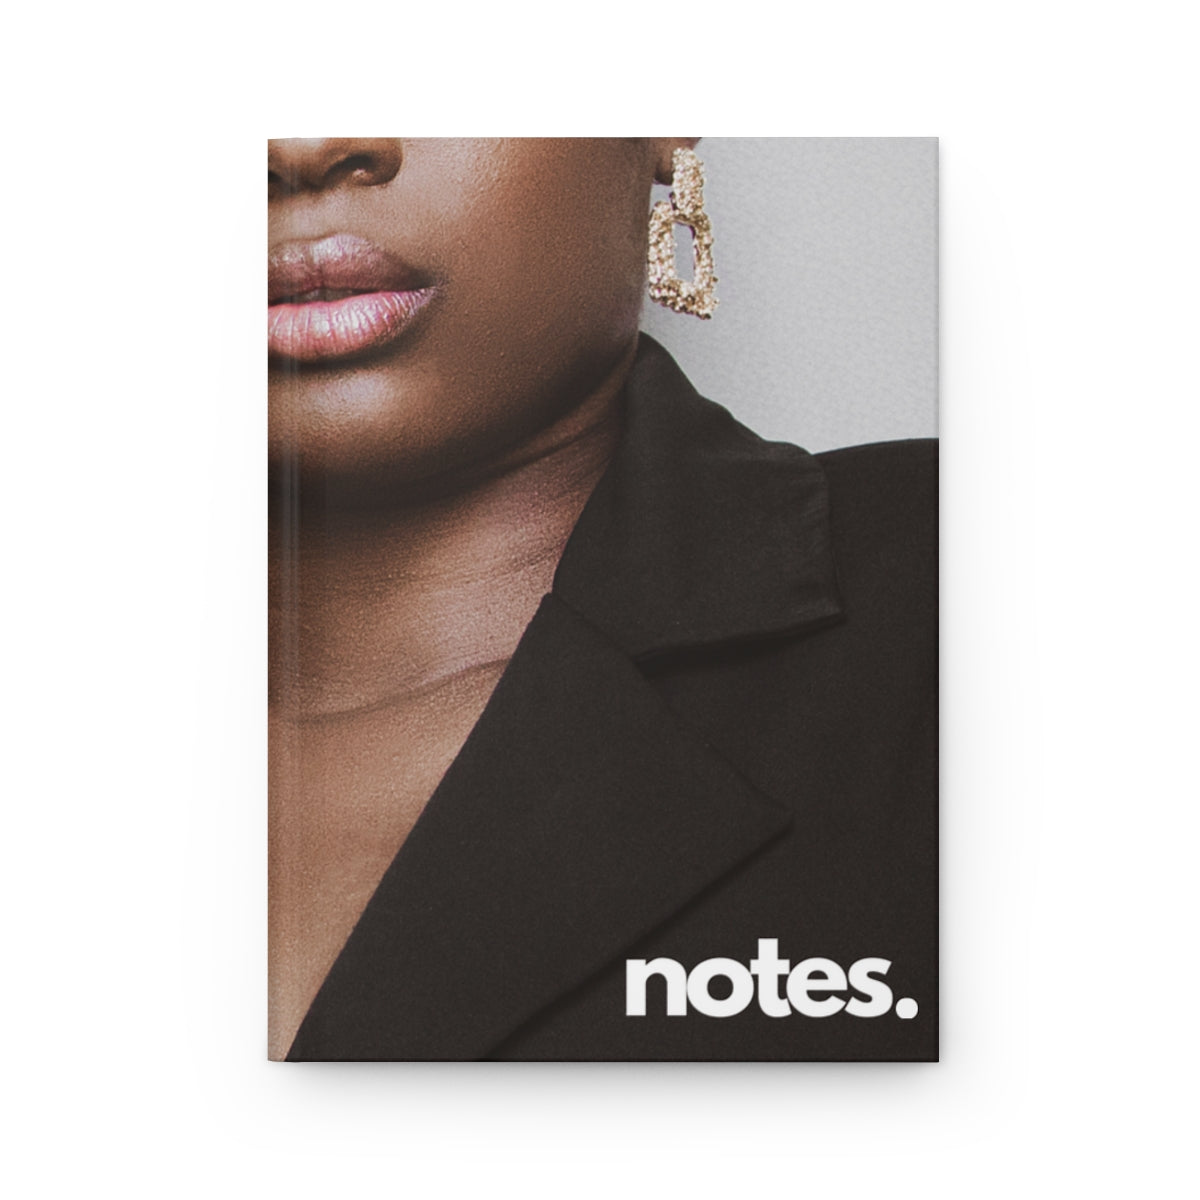 "notes" Velvety Matte Hardcover Journal